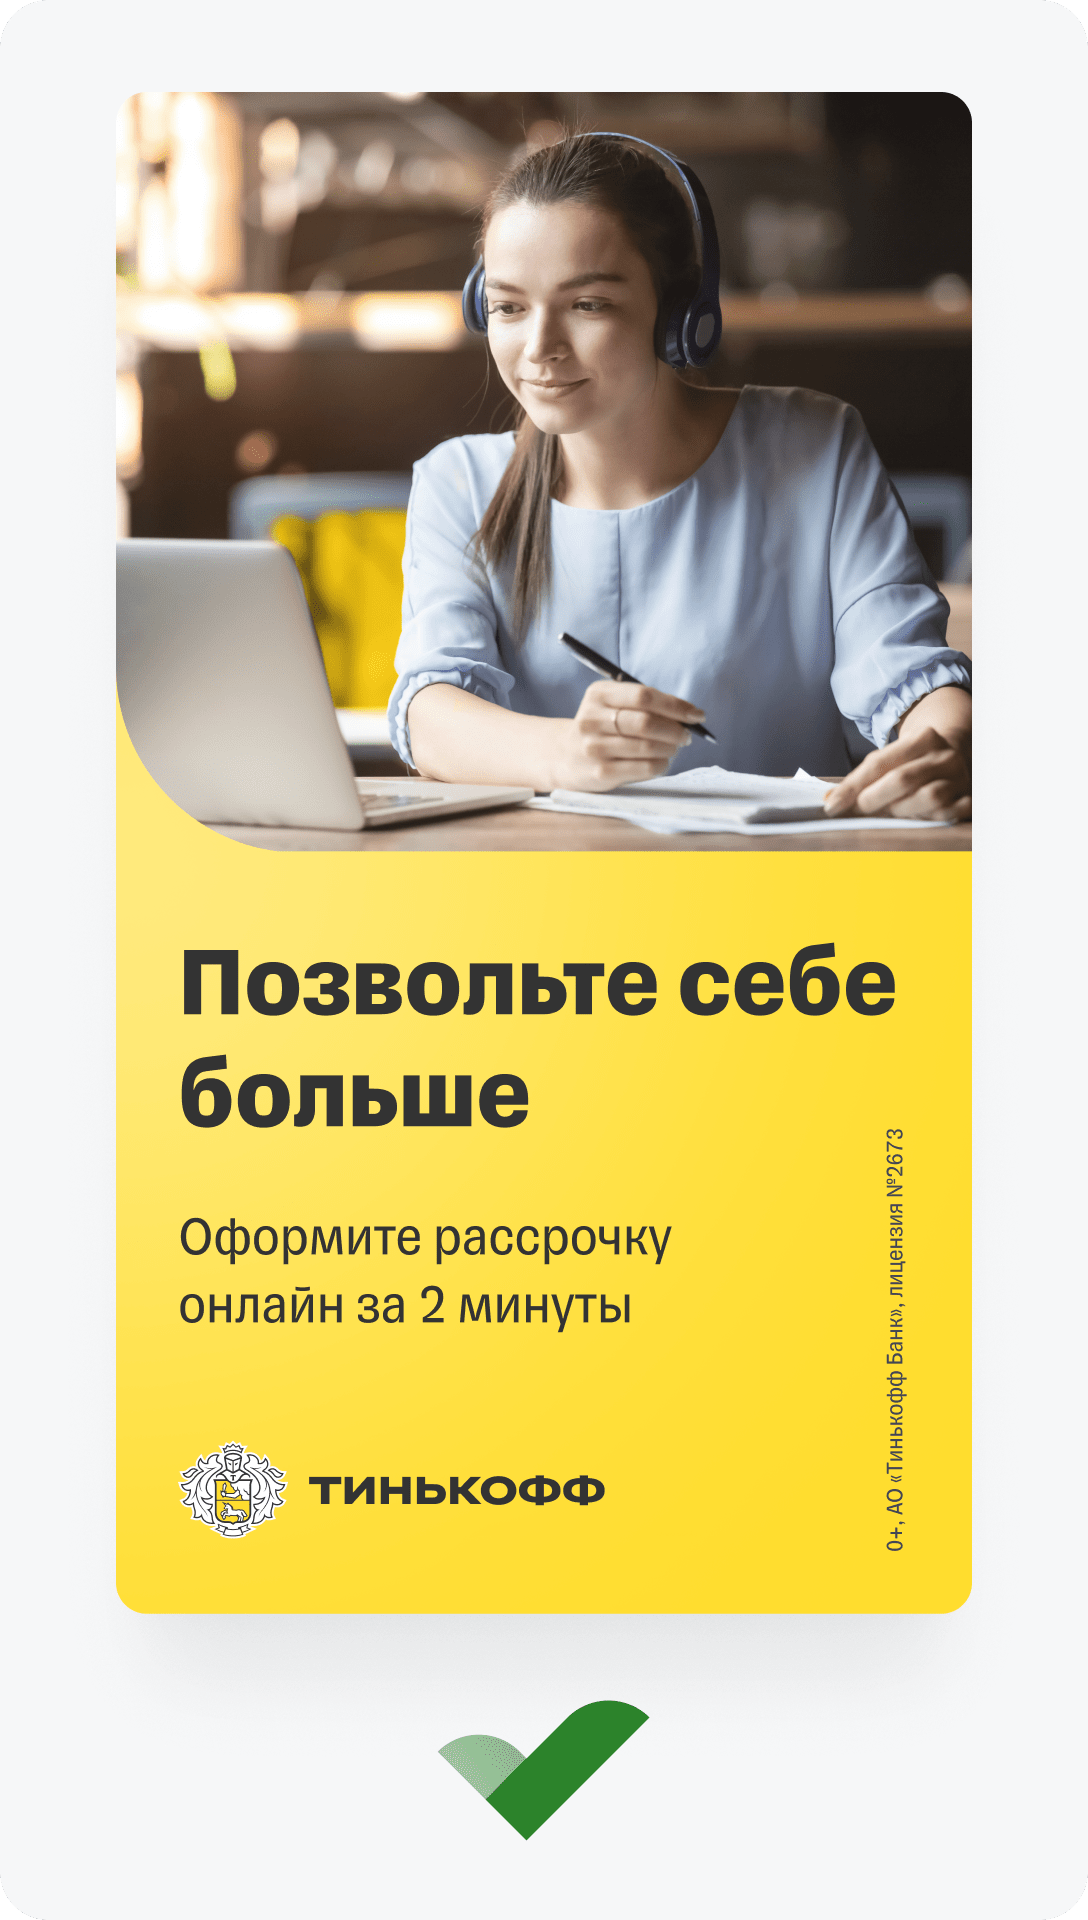 Тинькофф Банк — редизайн продуктовых страниц